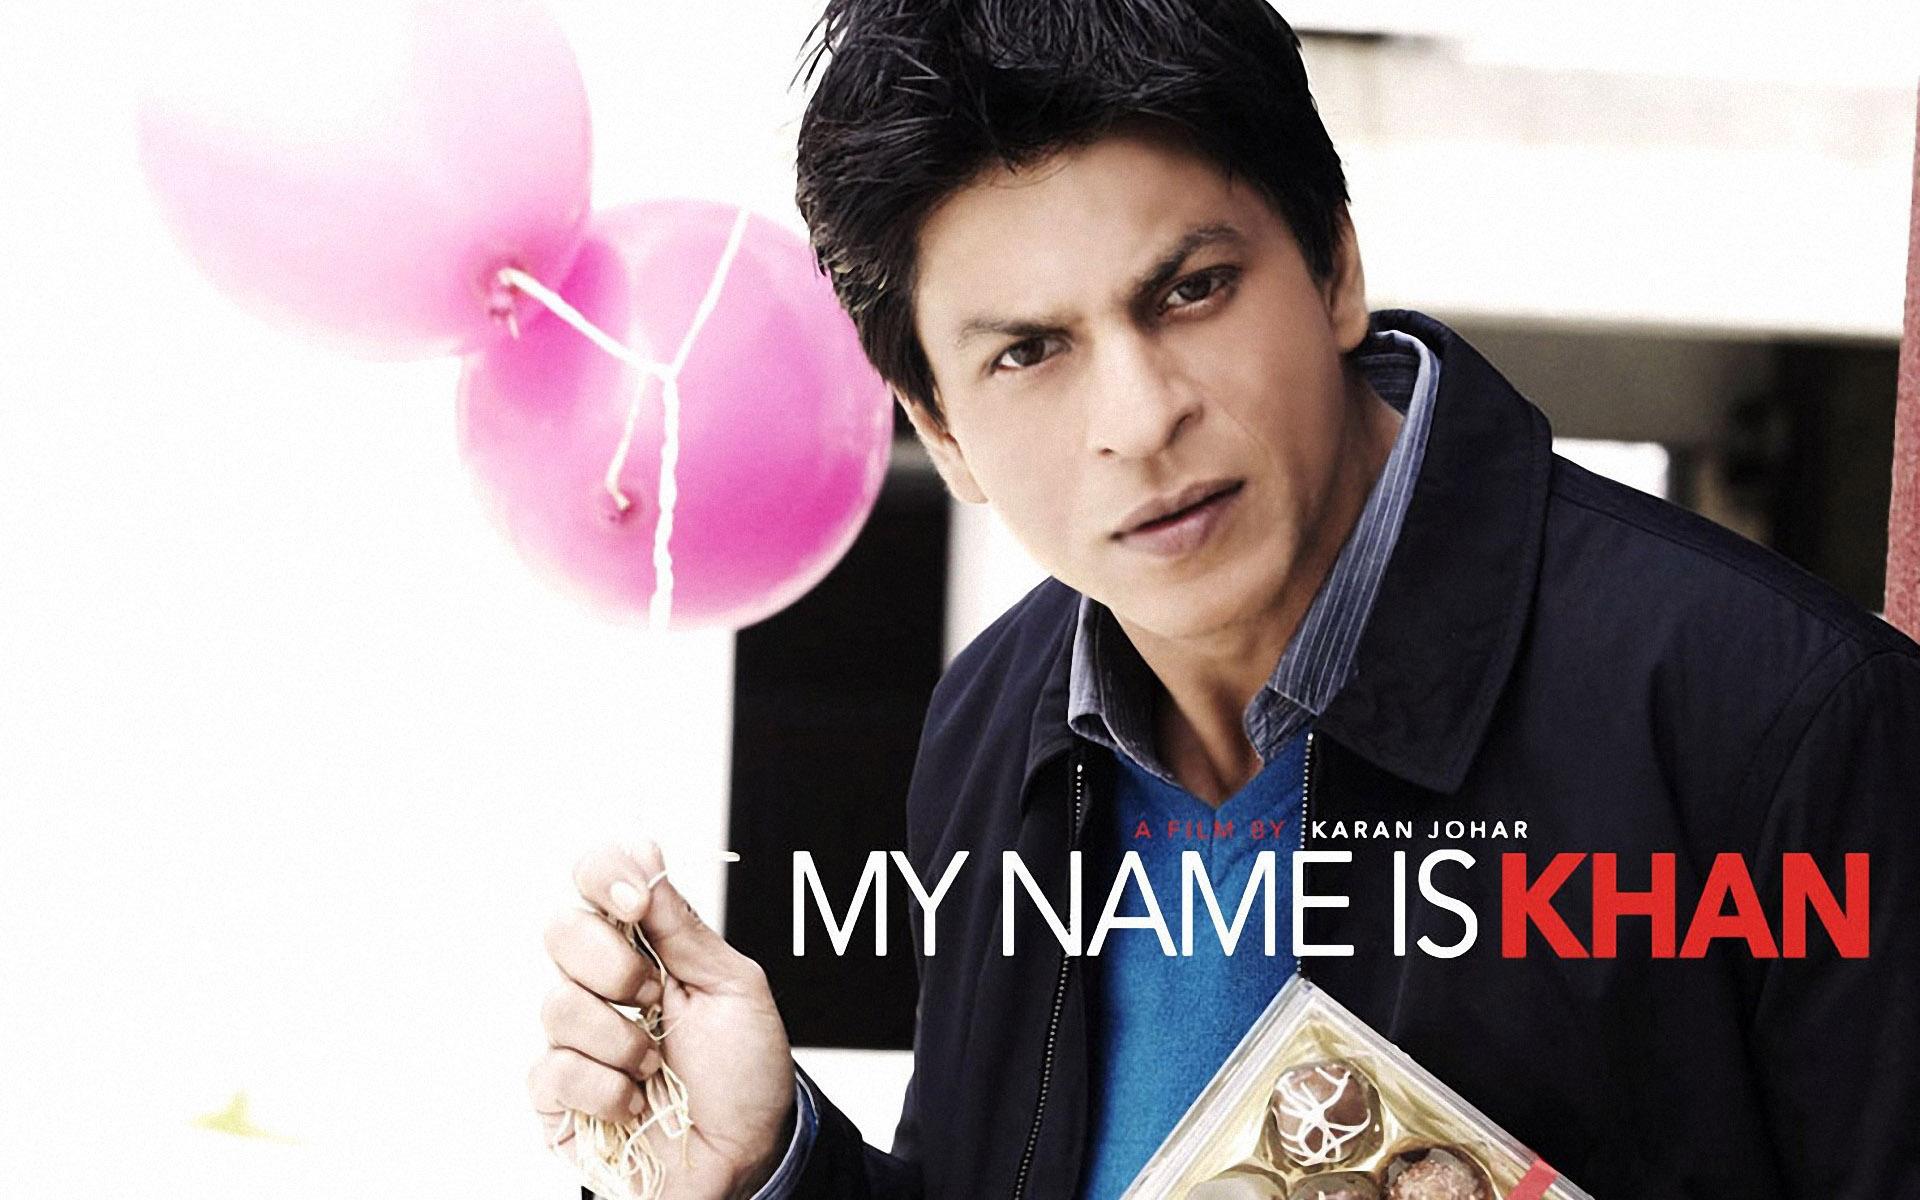 فيلم My name is khan